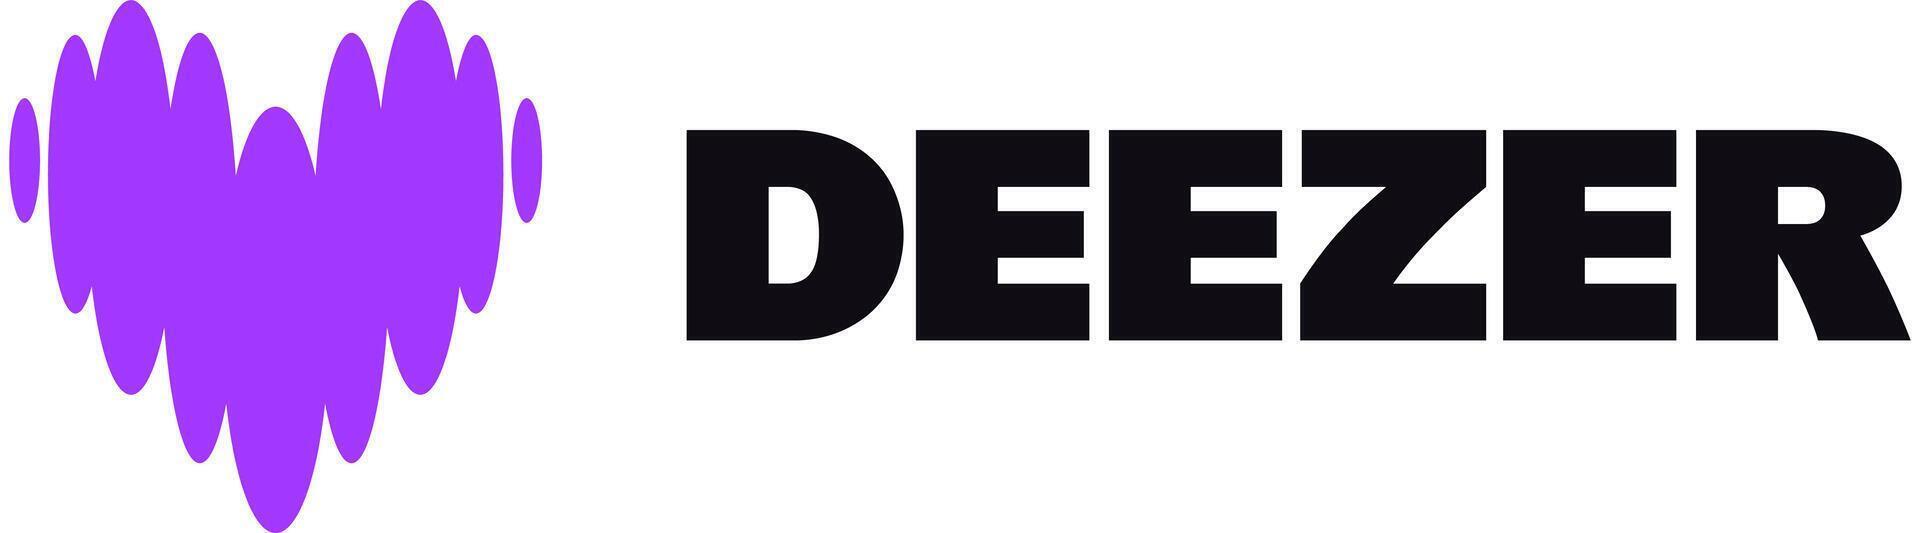 deezer logotyp. internet musik strömning service vektor